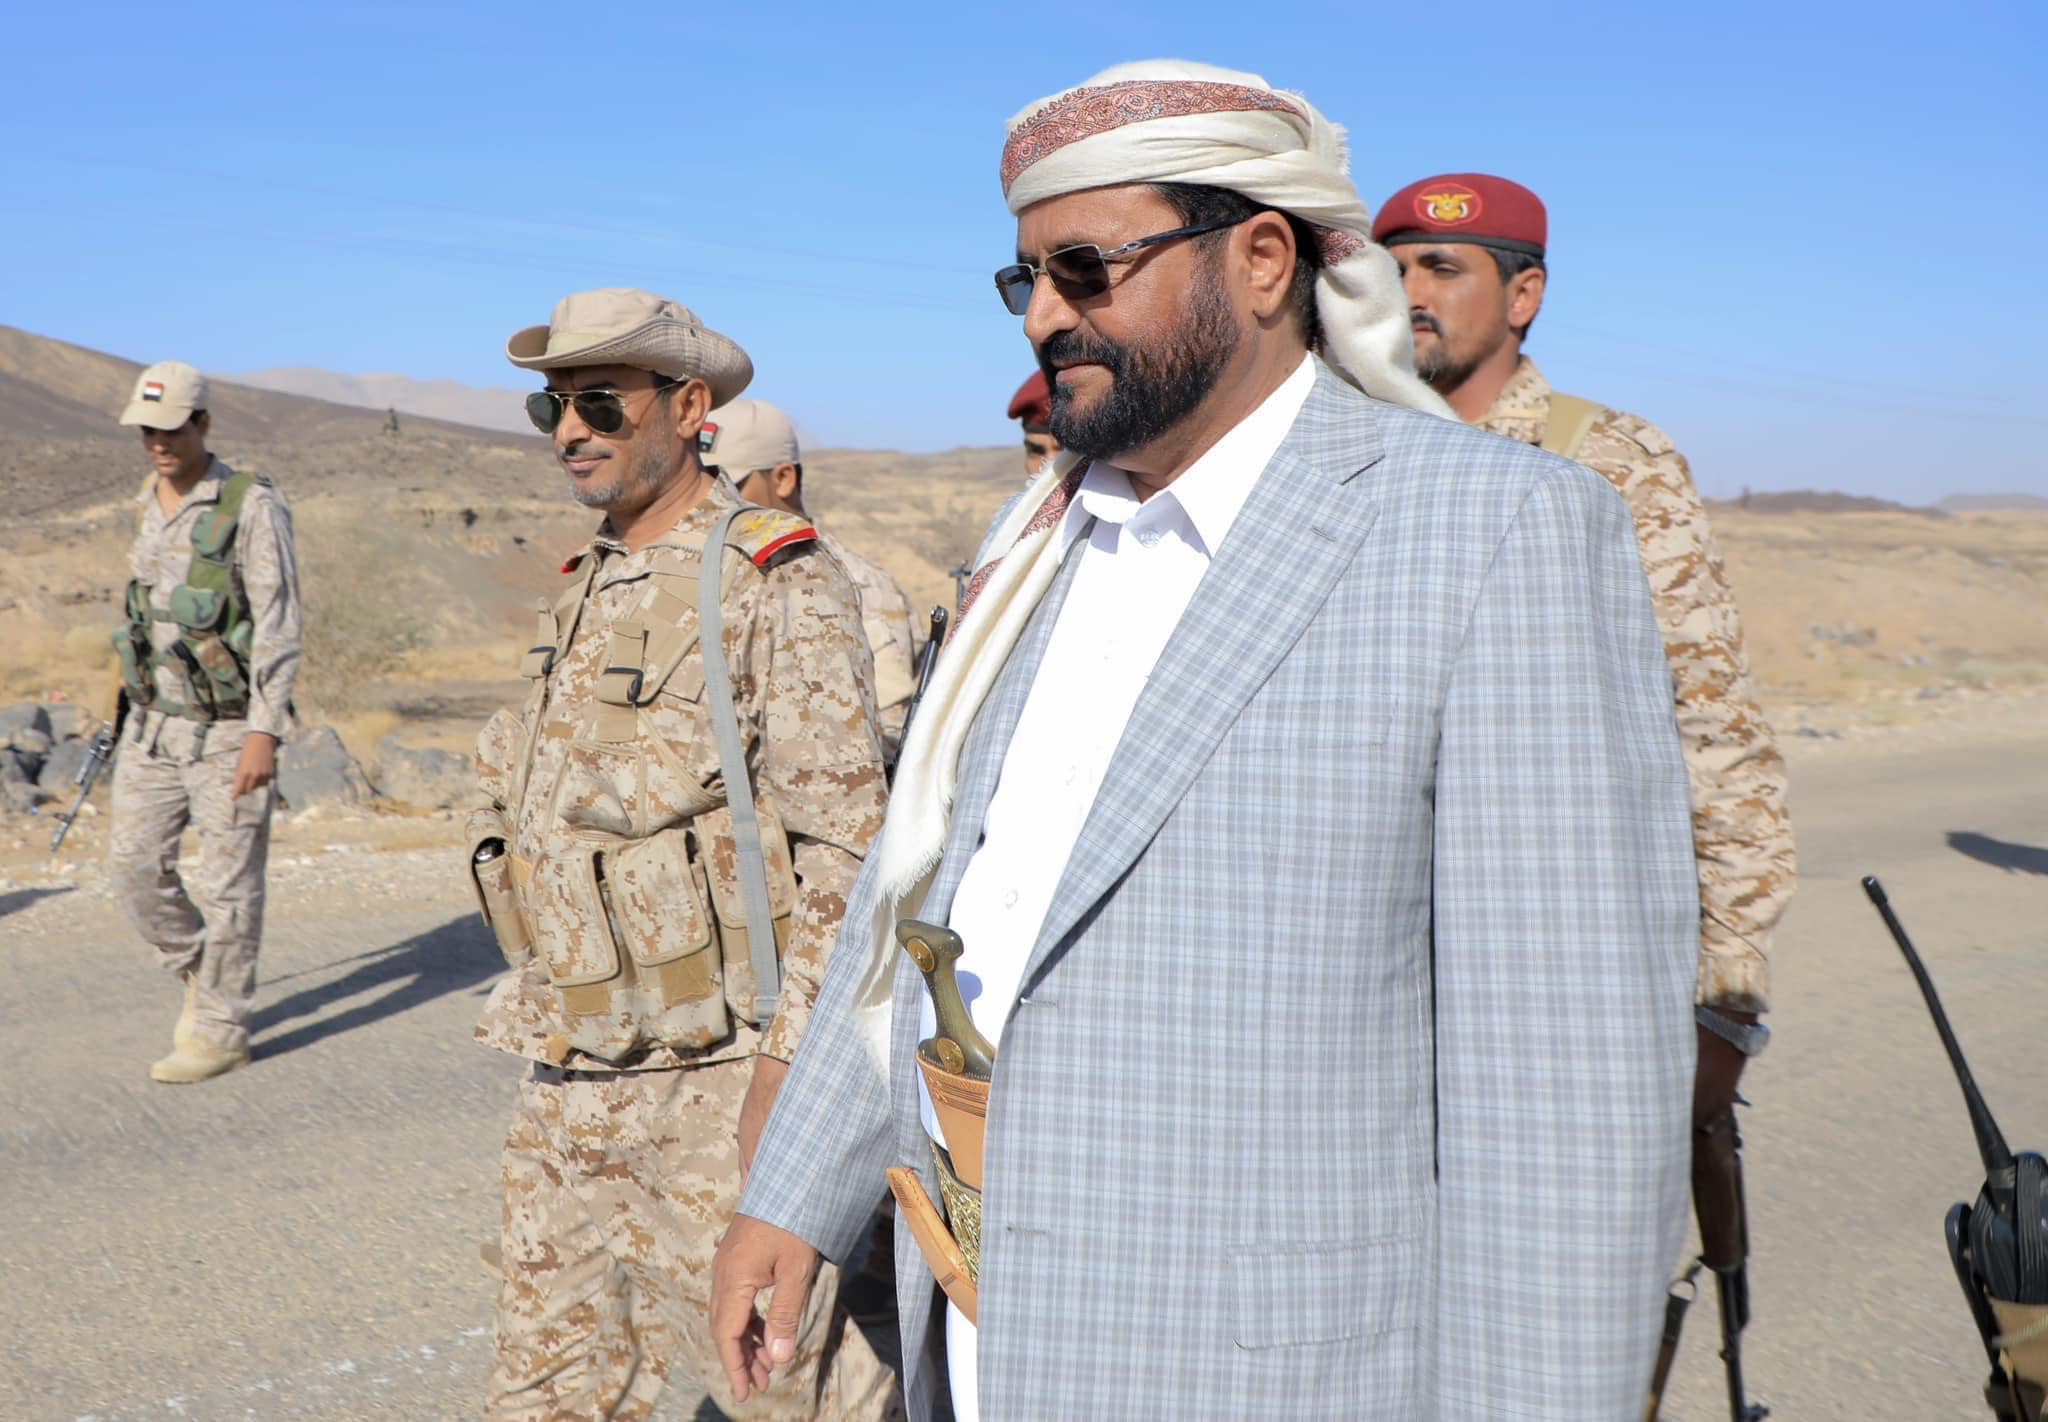 عضو الرئاسي اليمني يعلن فتح الطريق الرئيس بين “مأرب وصنعاء” من جانب واحد